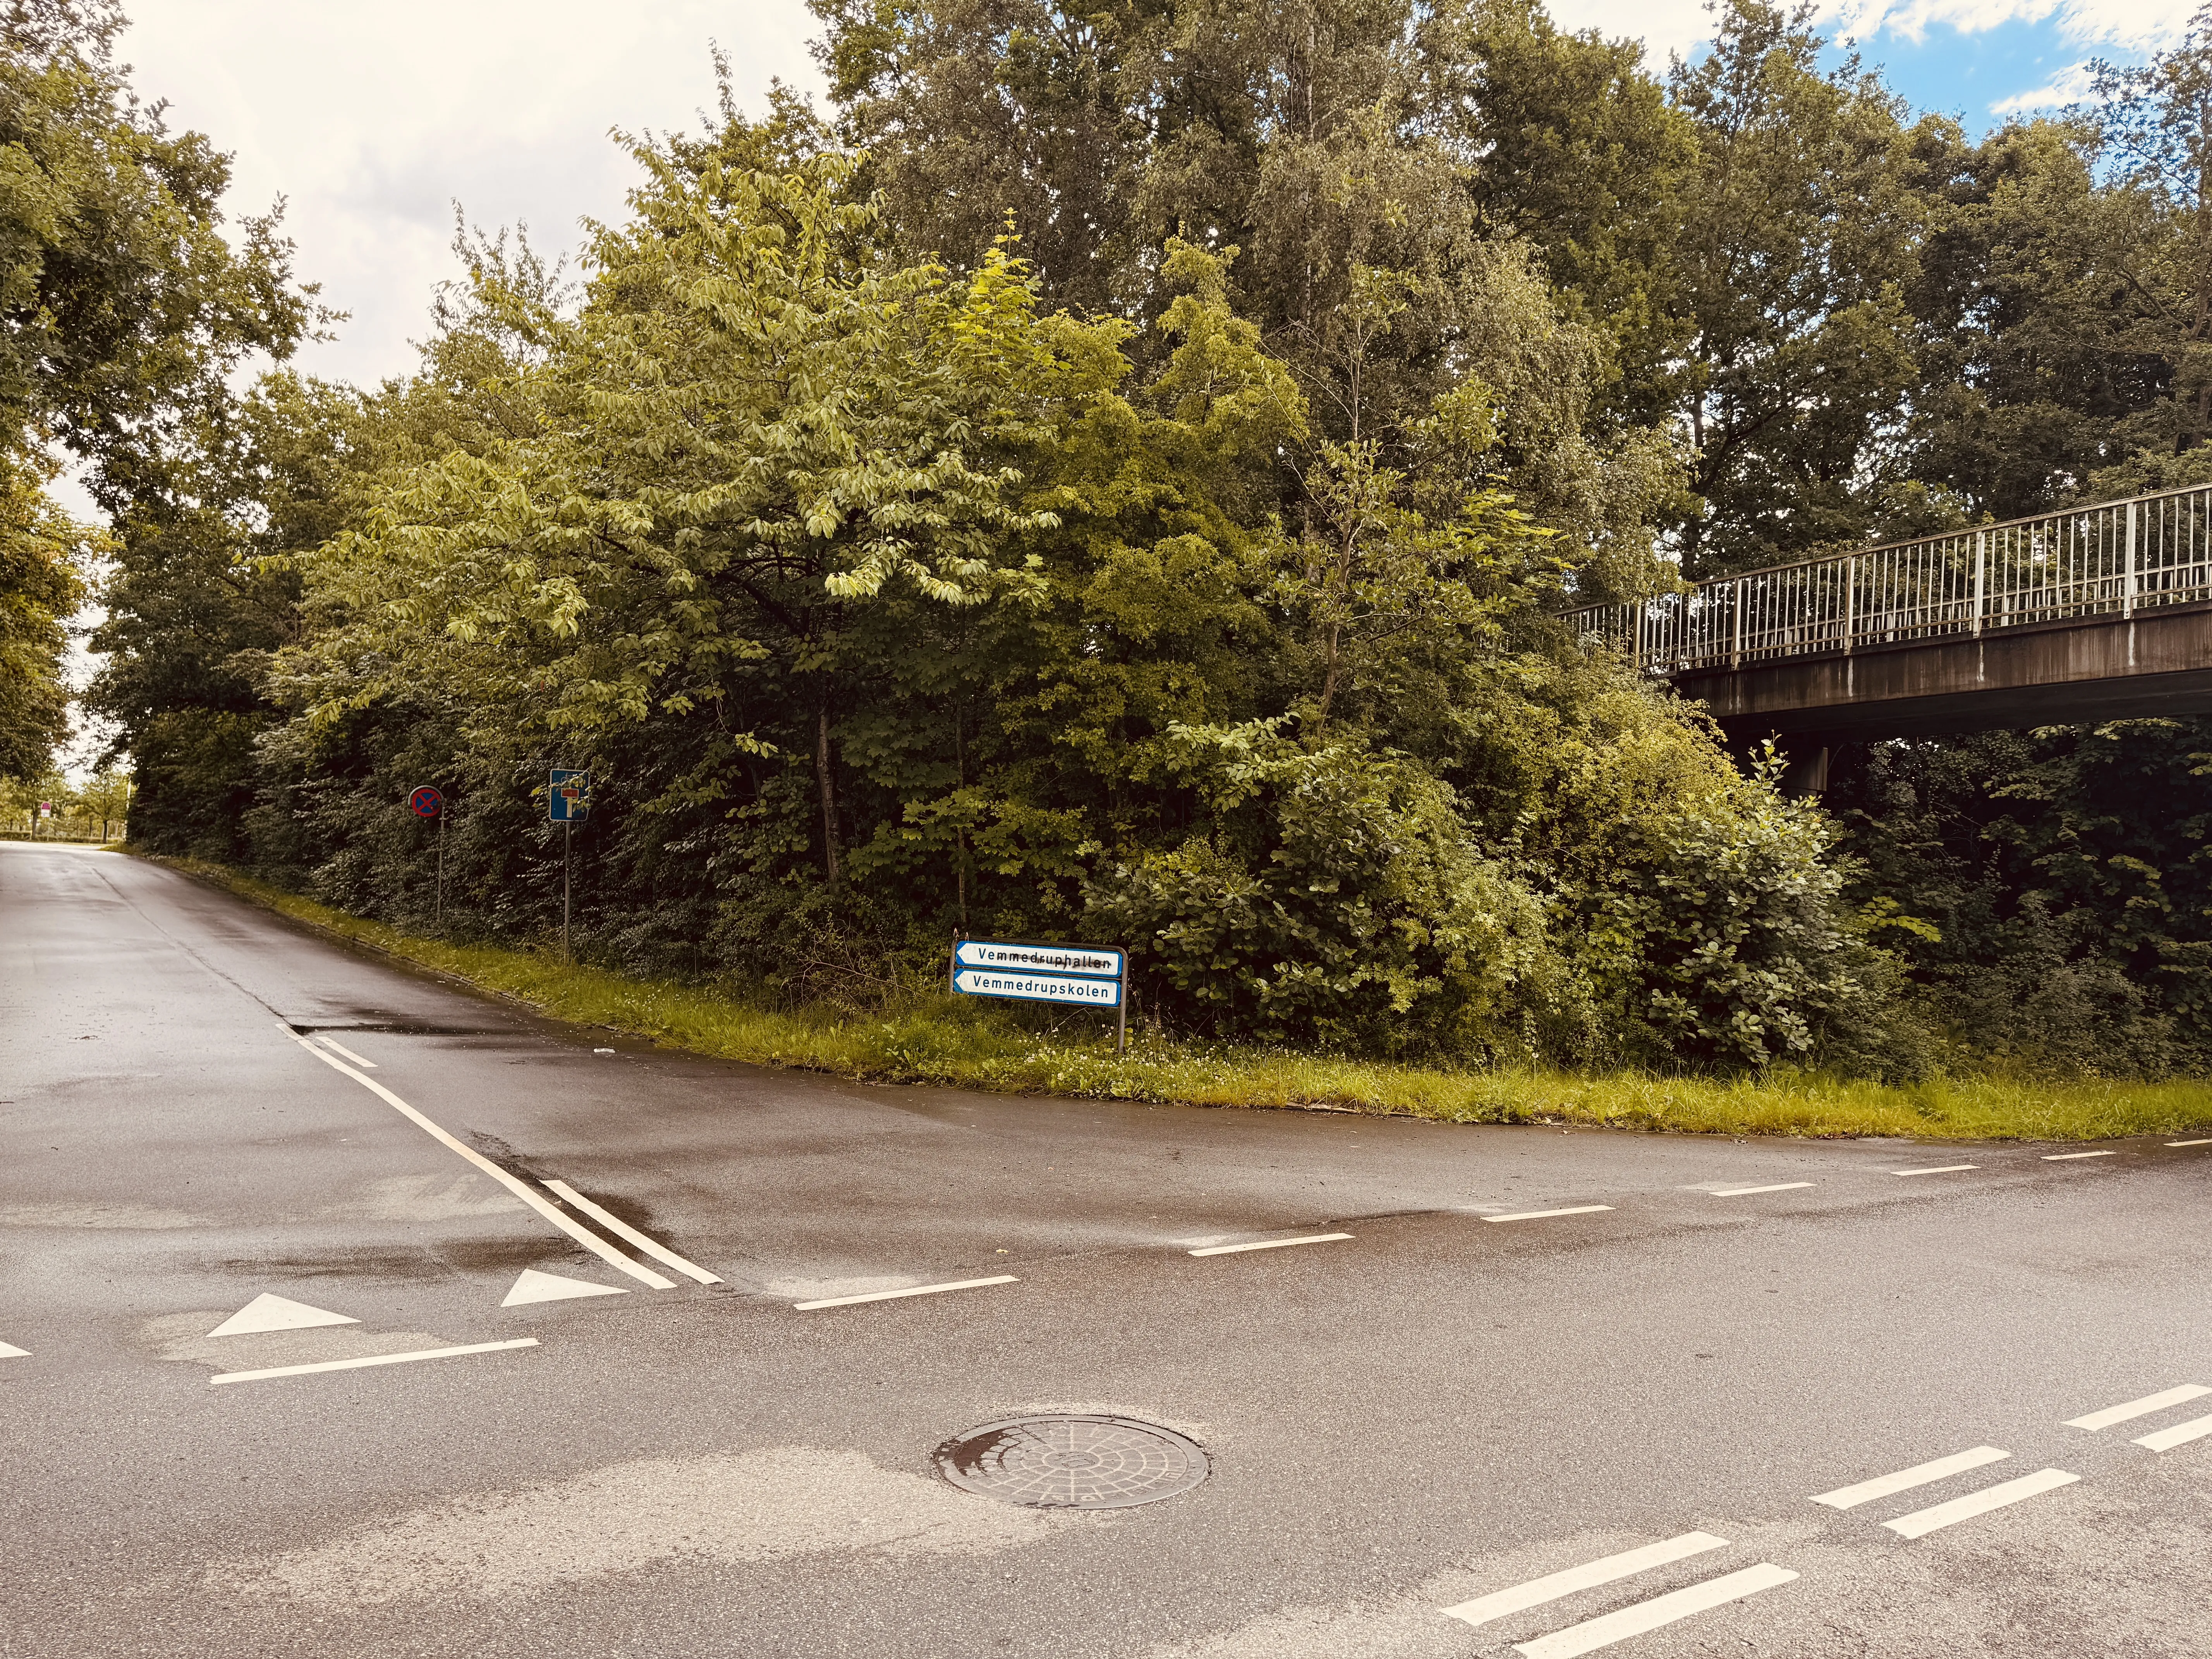 Billede af Lundsgaardsvej Trinbræt - Trinbræt er nedrevet, men Lundsgaardsvej Trinbræt har ligget her.